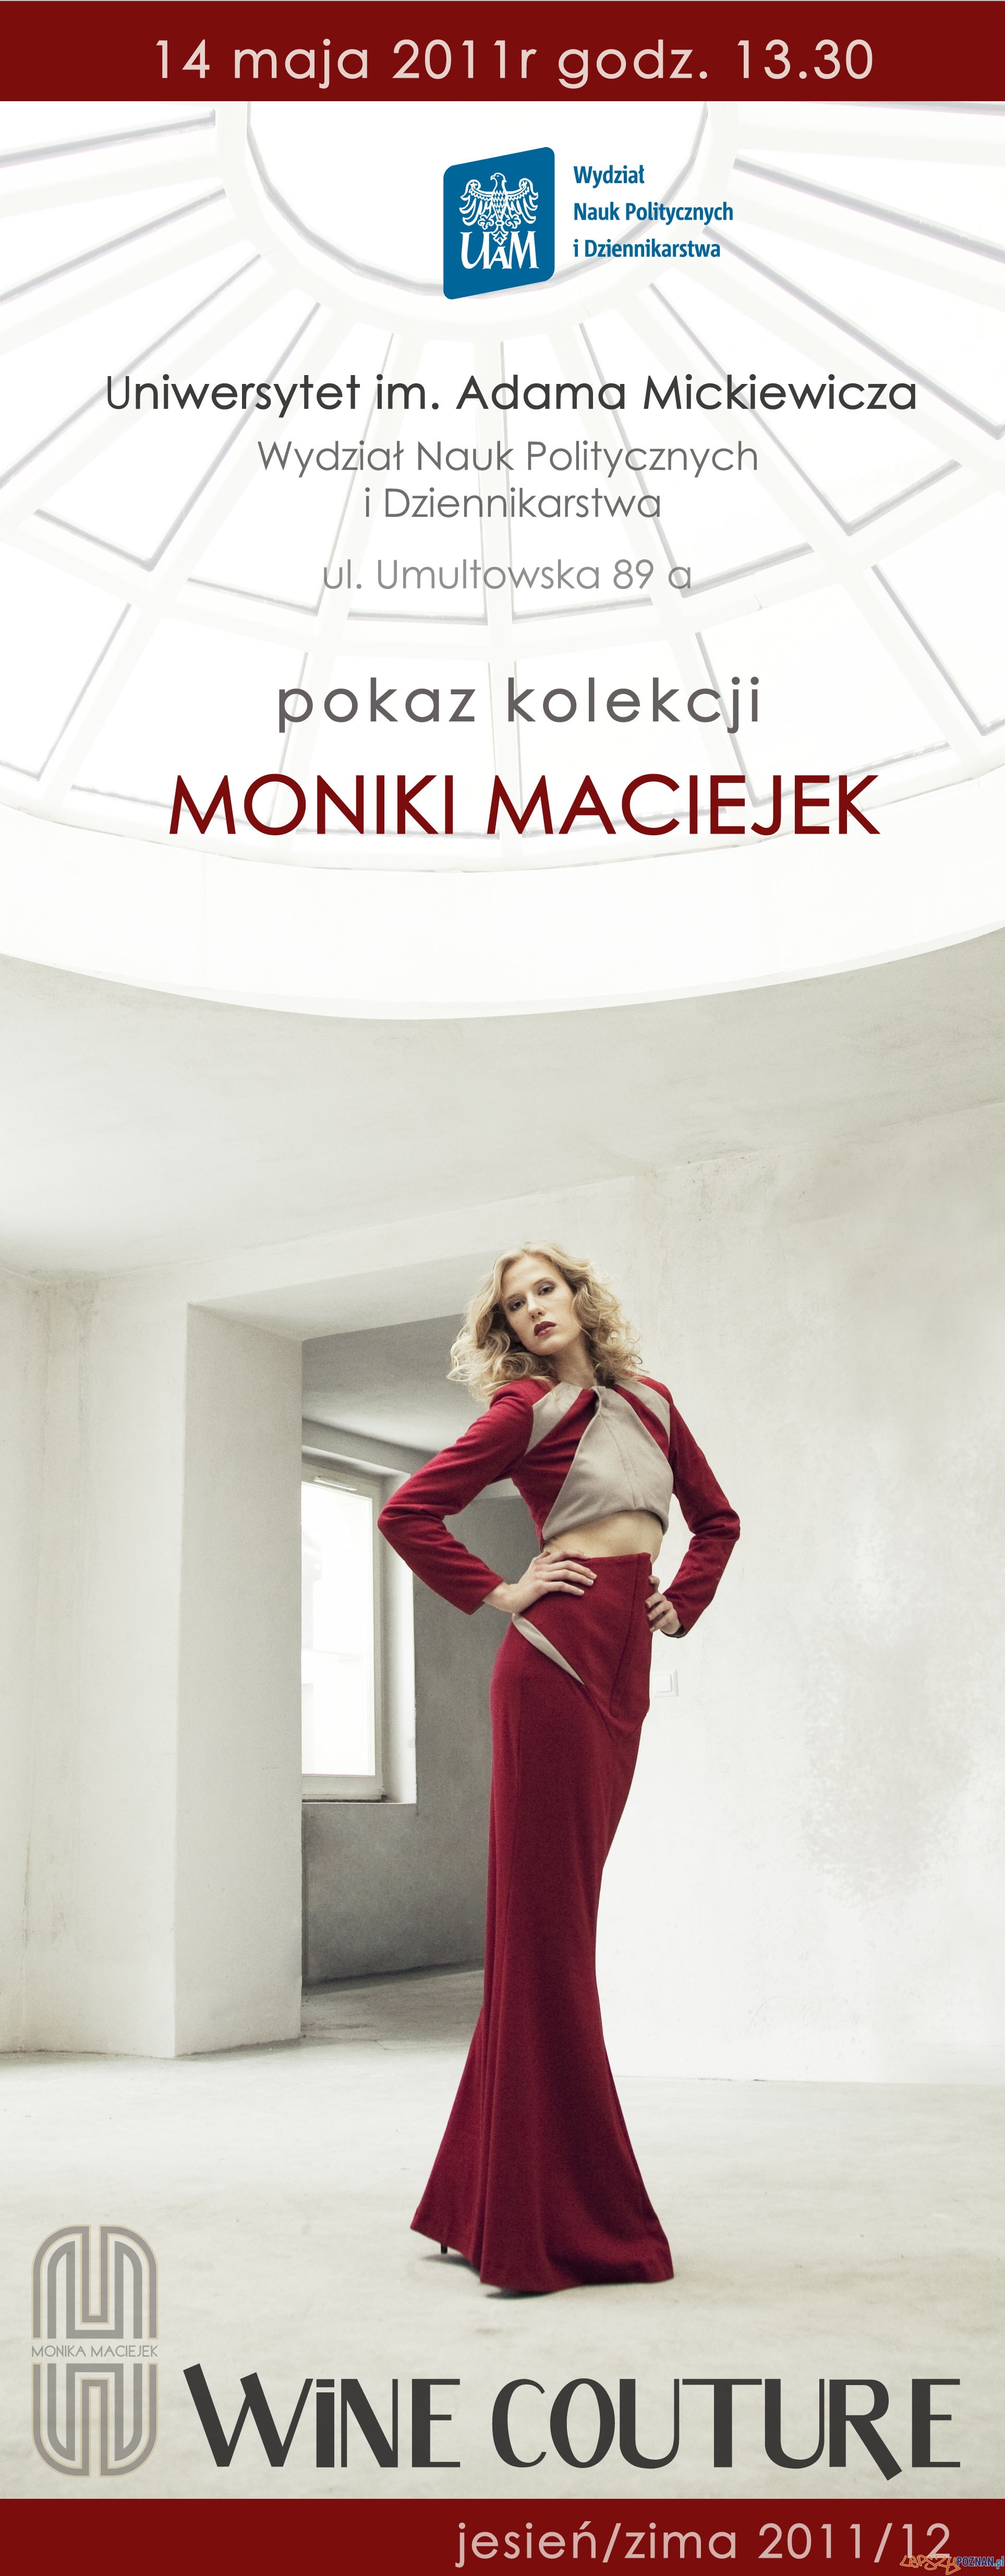 Monika Maciejek  Foto: Monika Maciejek